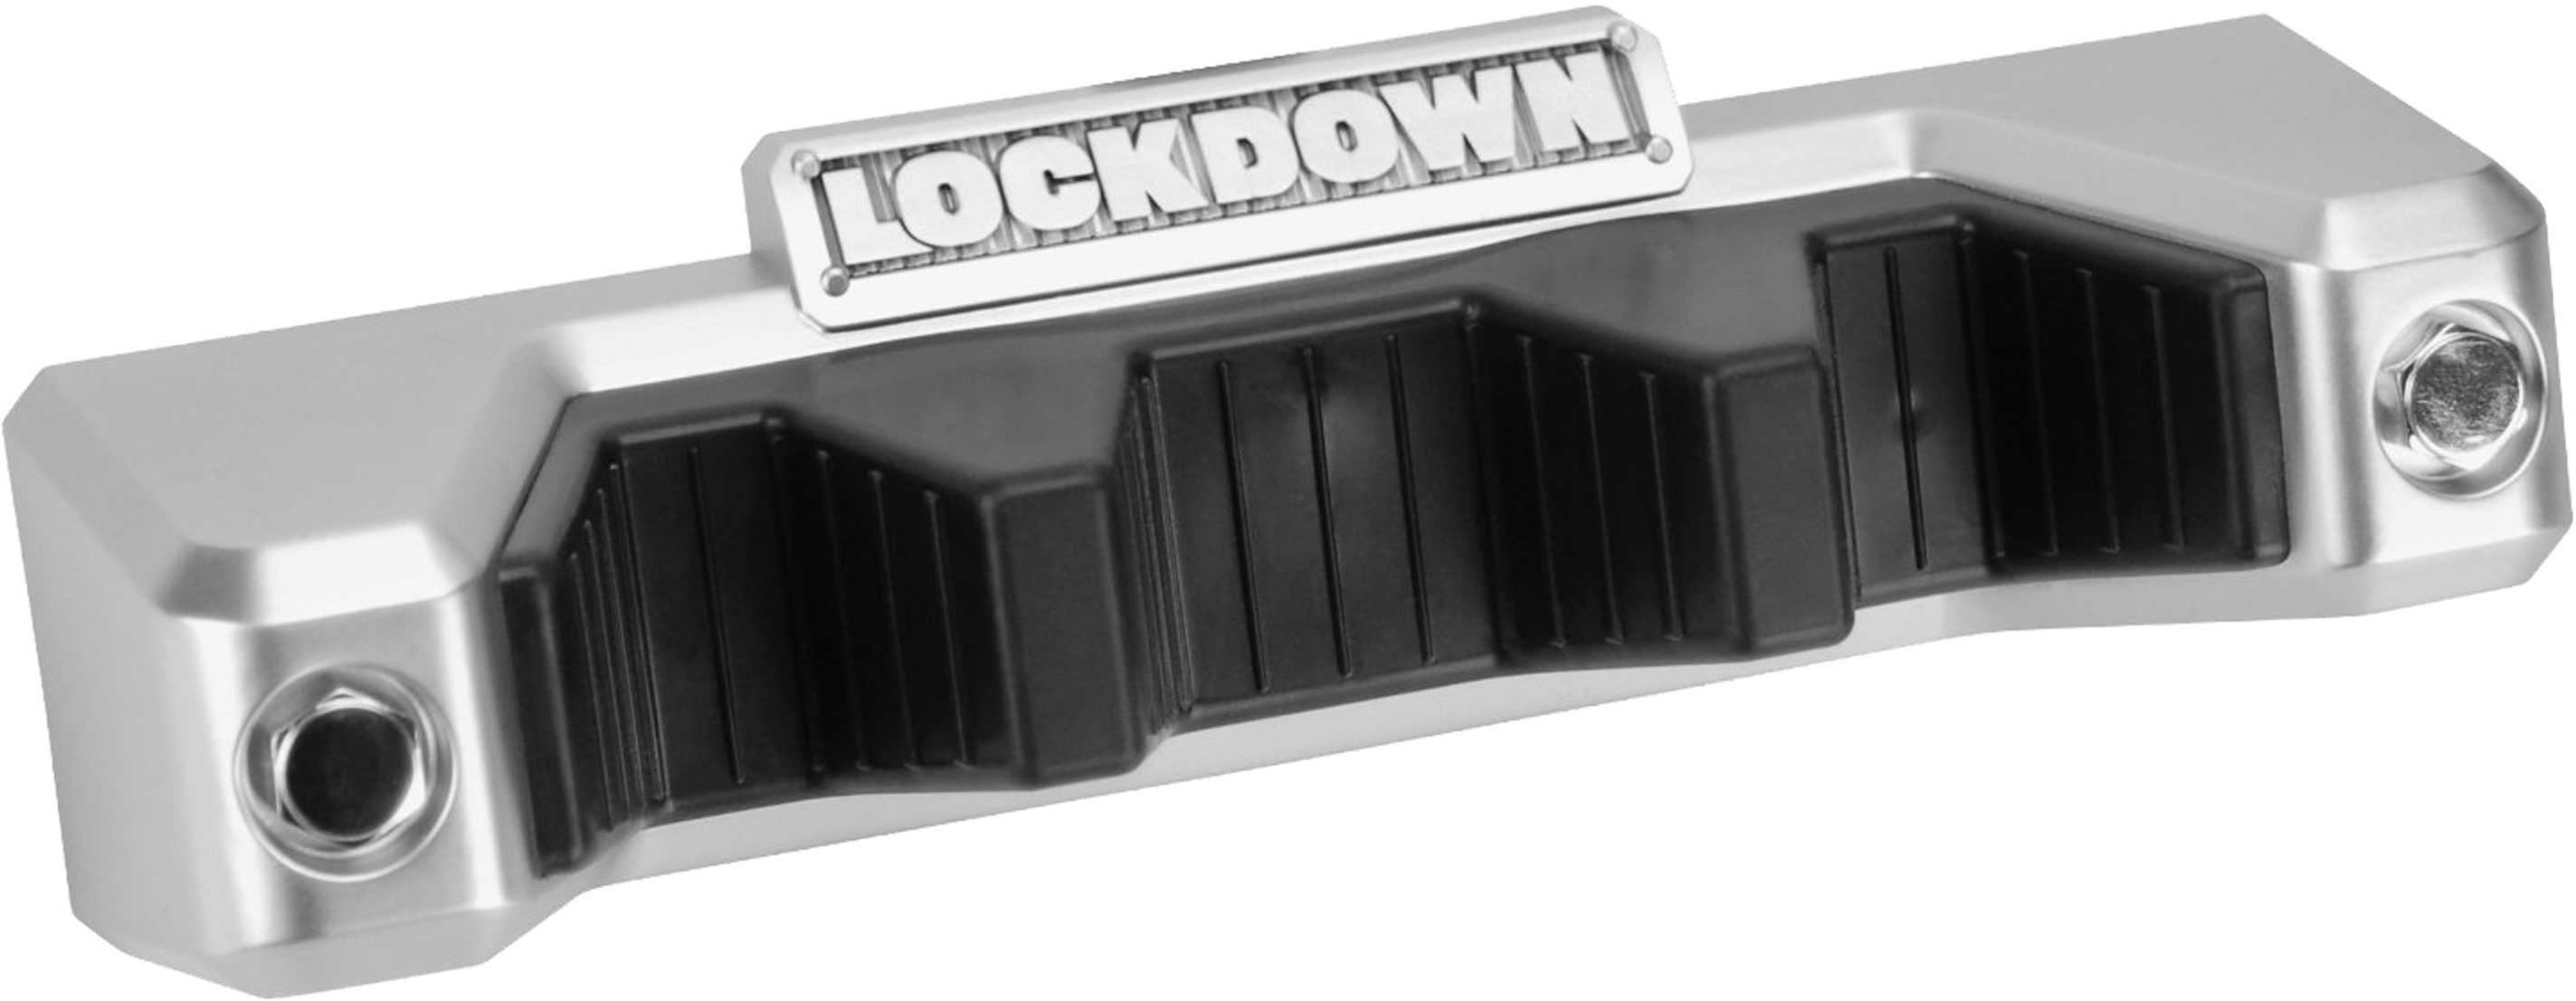 Lockdown Magnetic Barrel Rest 222177